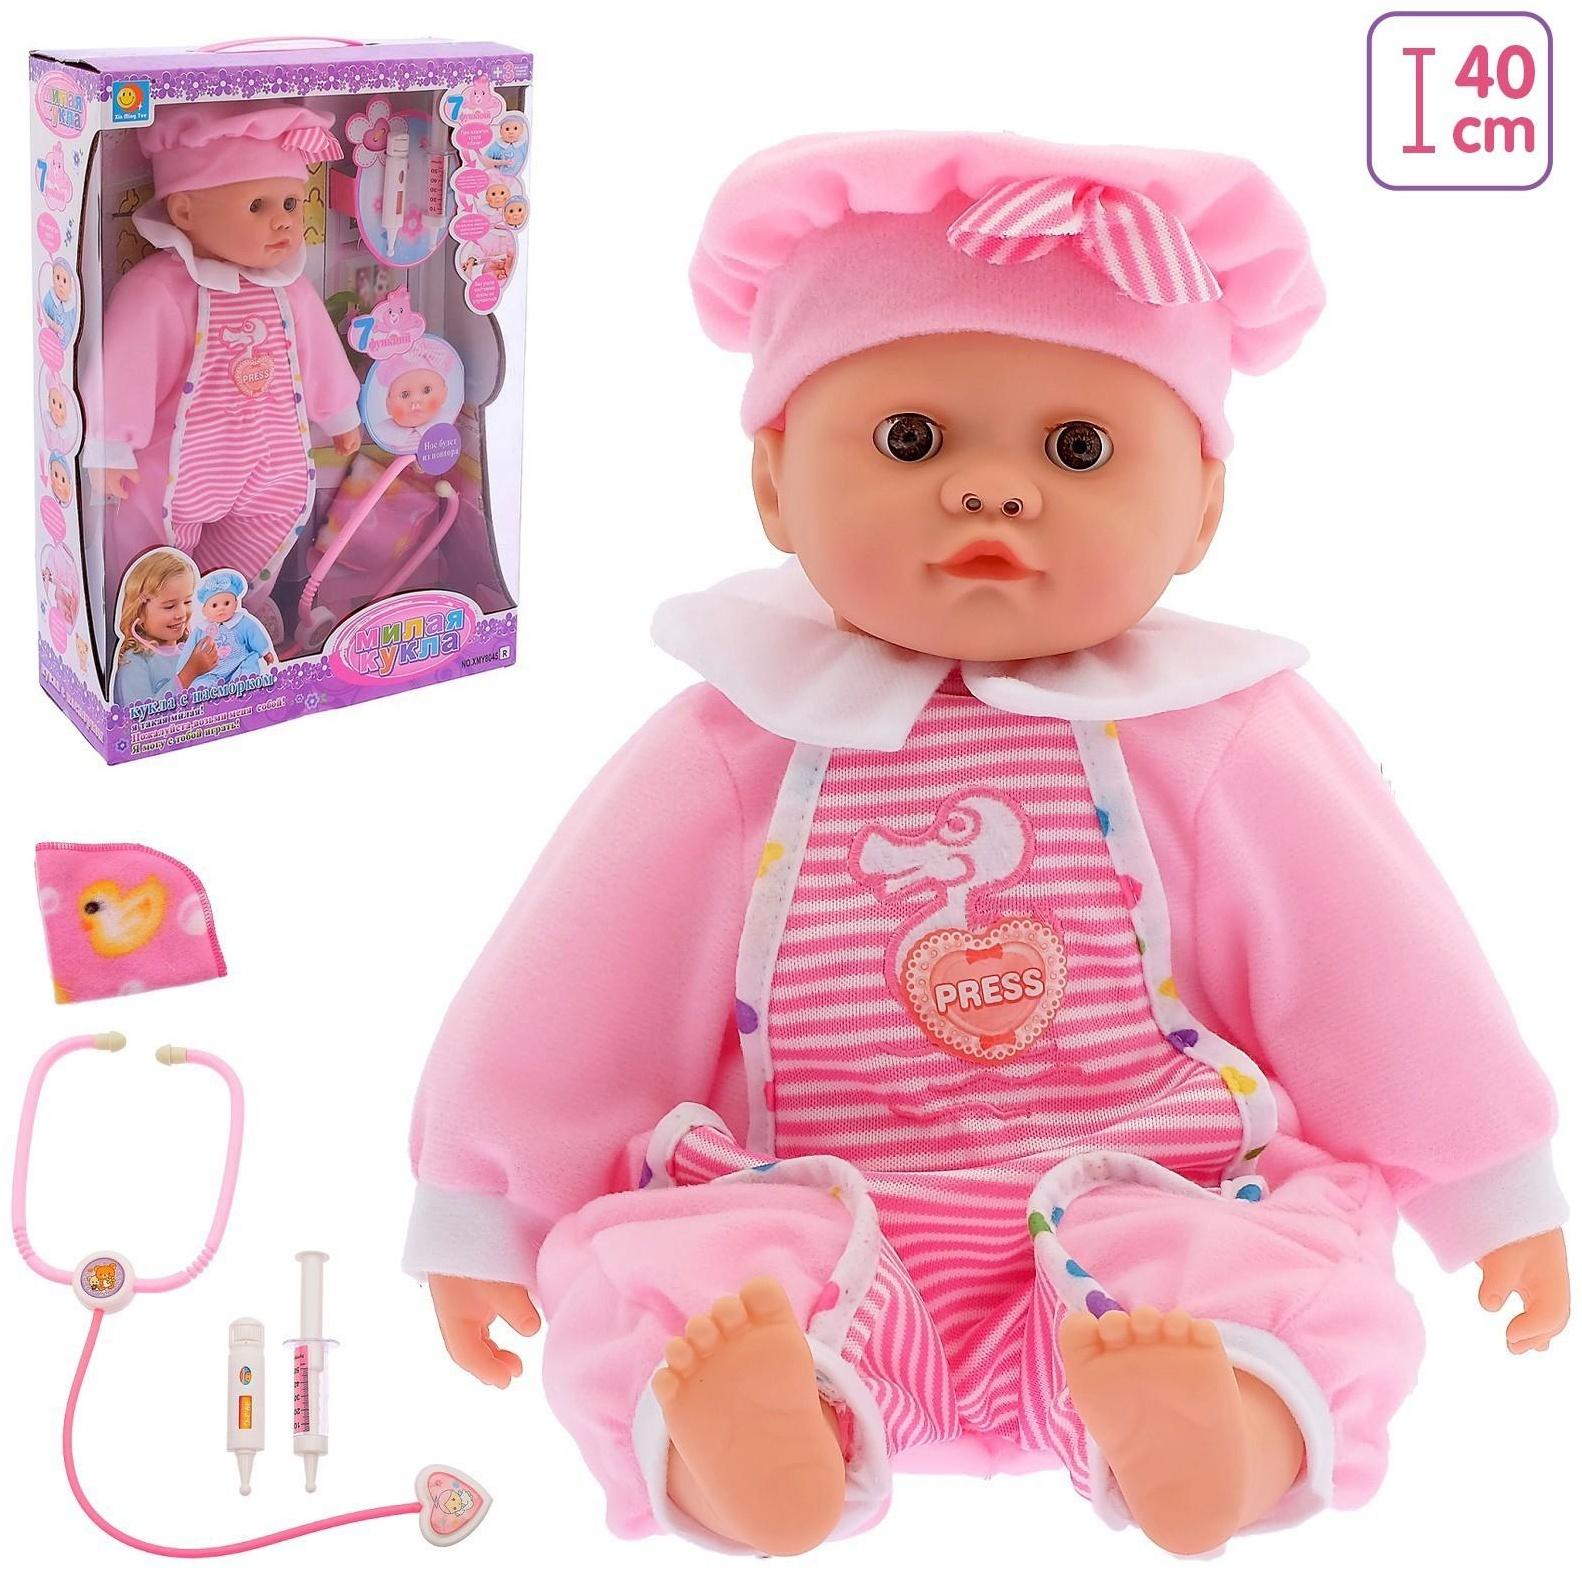 Интерактивный пупс «Милая кукла», болеет, сопли, краснеет, звук, цвет розовый